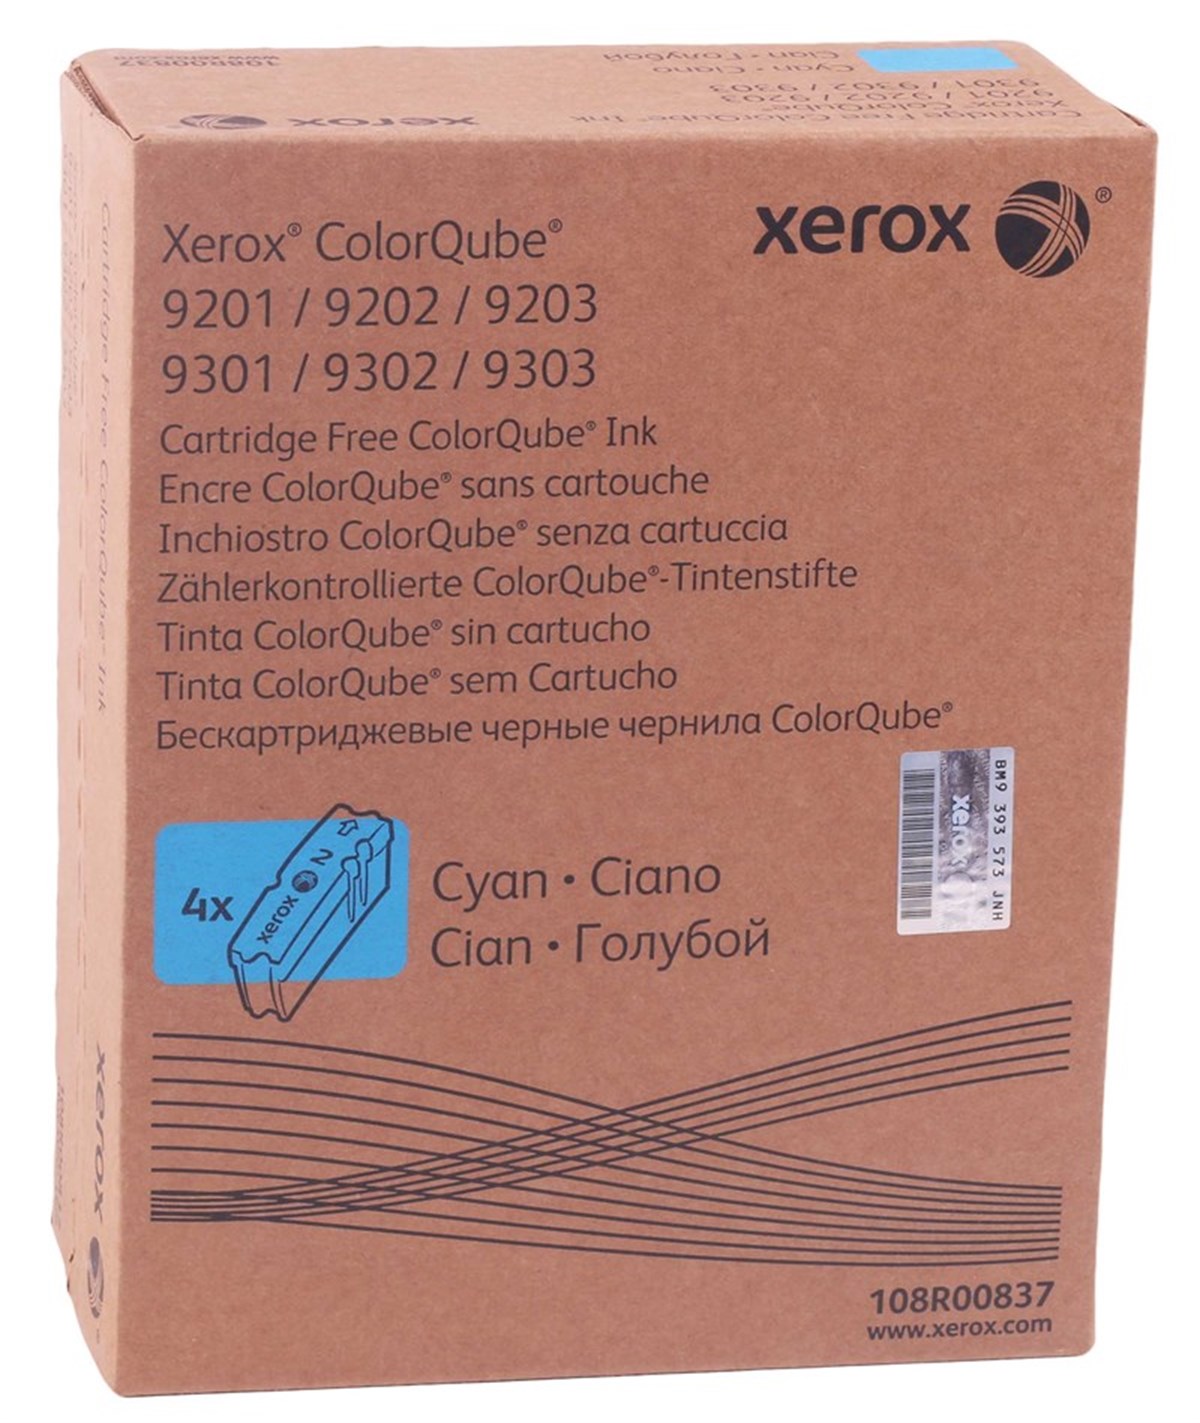 Картридж Xerox 108R00837 оригинальный синий для принтеров ColorQube 9201 | ColorQube 9202 | ColorQube 9203 | ColorQube 9301 | ColorQube 9302 | ColorQube 9303